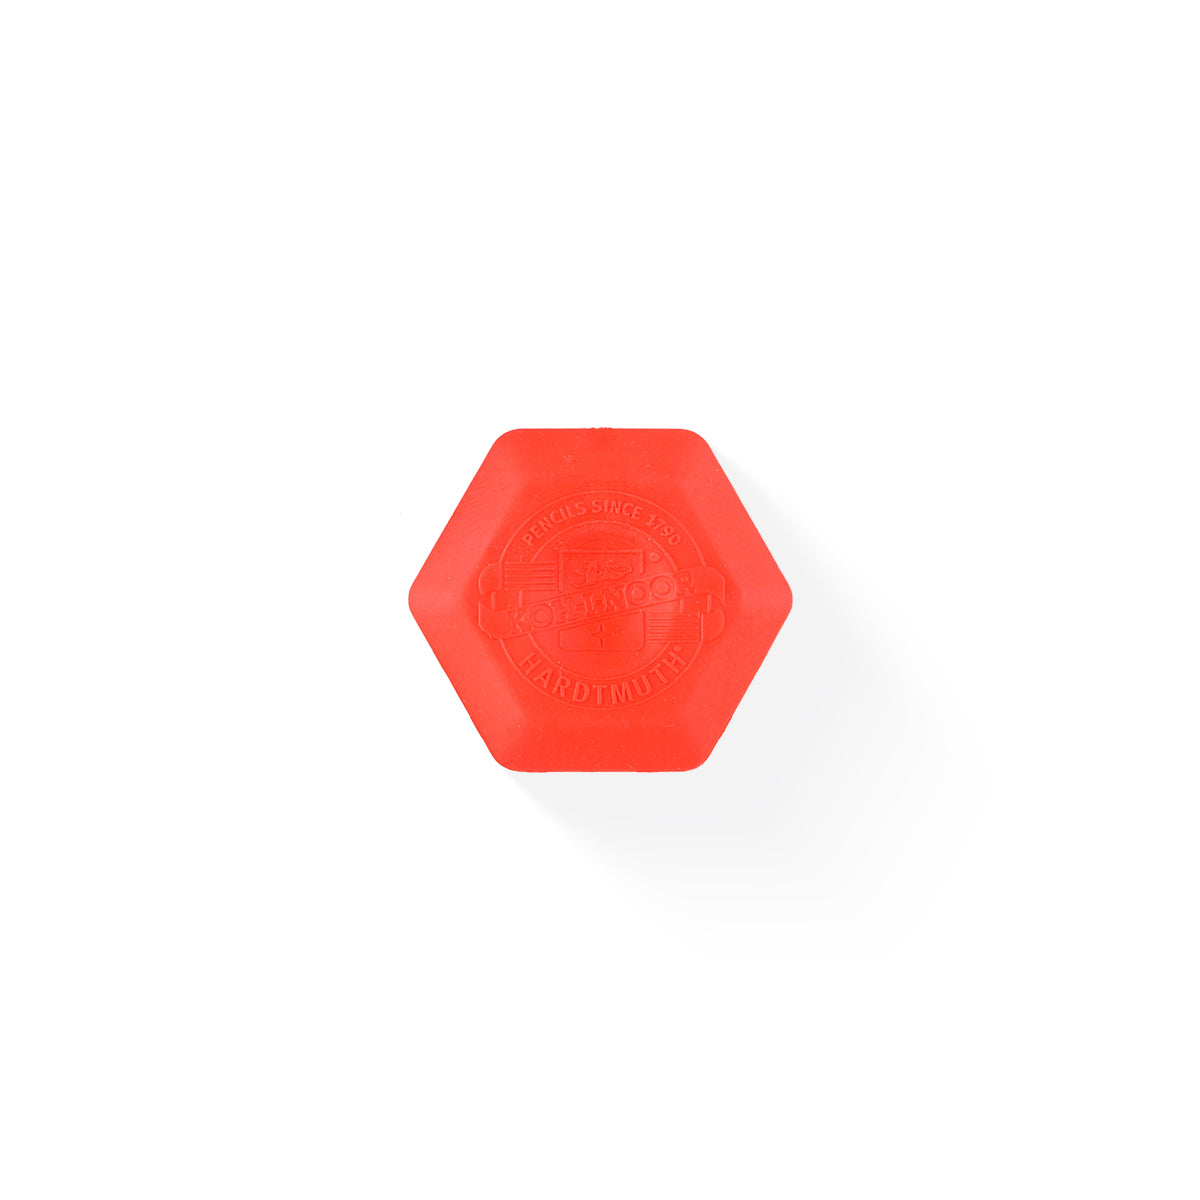 Koh-I-Noor Hexagon Thermoplastic Eraser orange